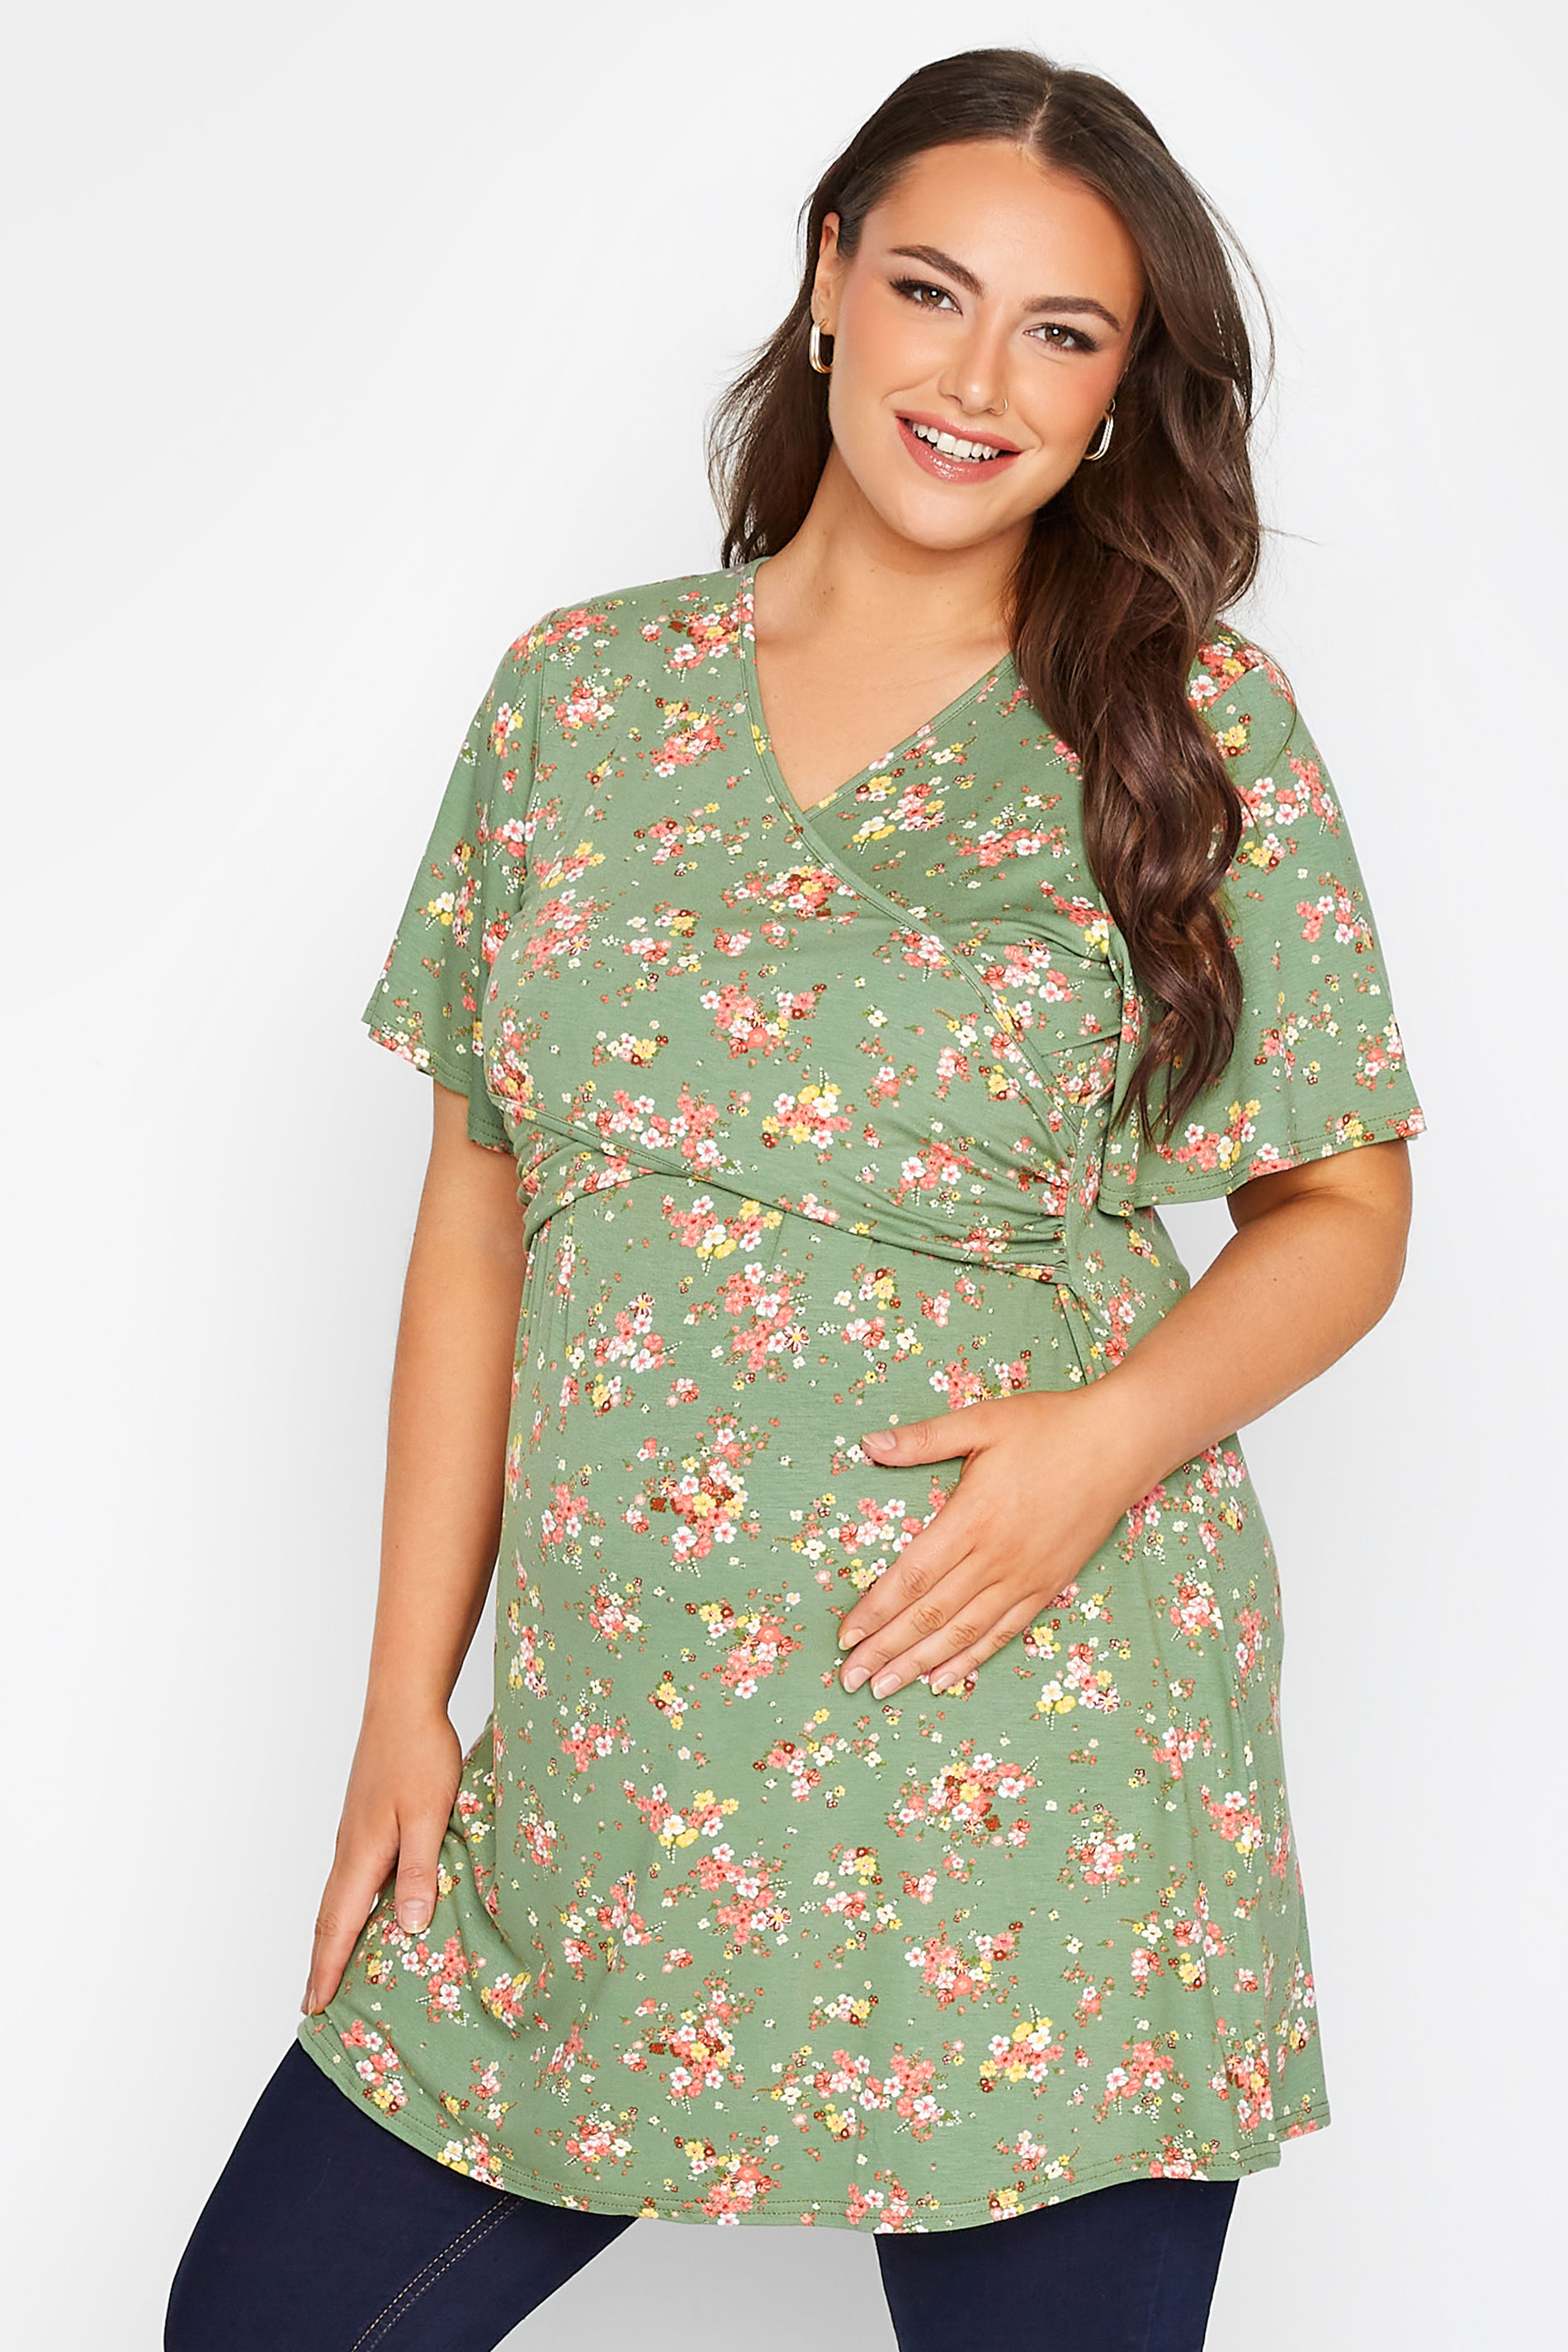 Grande taille  Vêtements de Grossesse Grande taille  Tops et t-shirts de grossesse | BUMP IT UP MATERNITY Curve Green Floral Nursing Top - KT94740